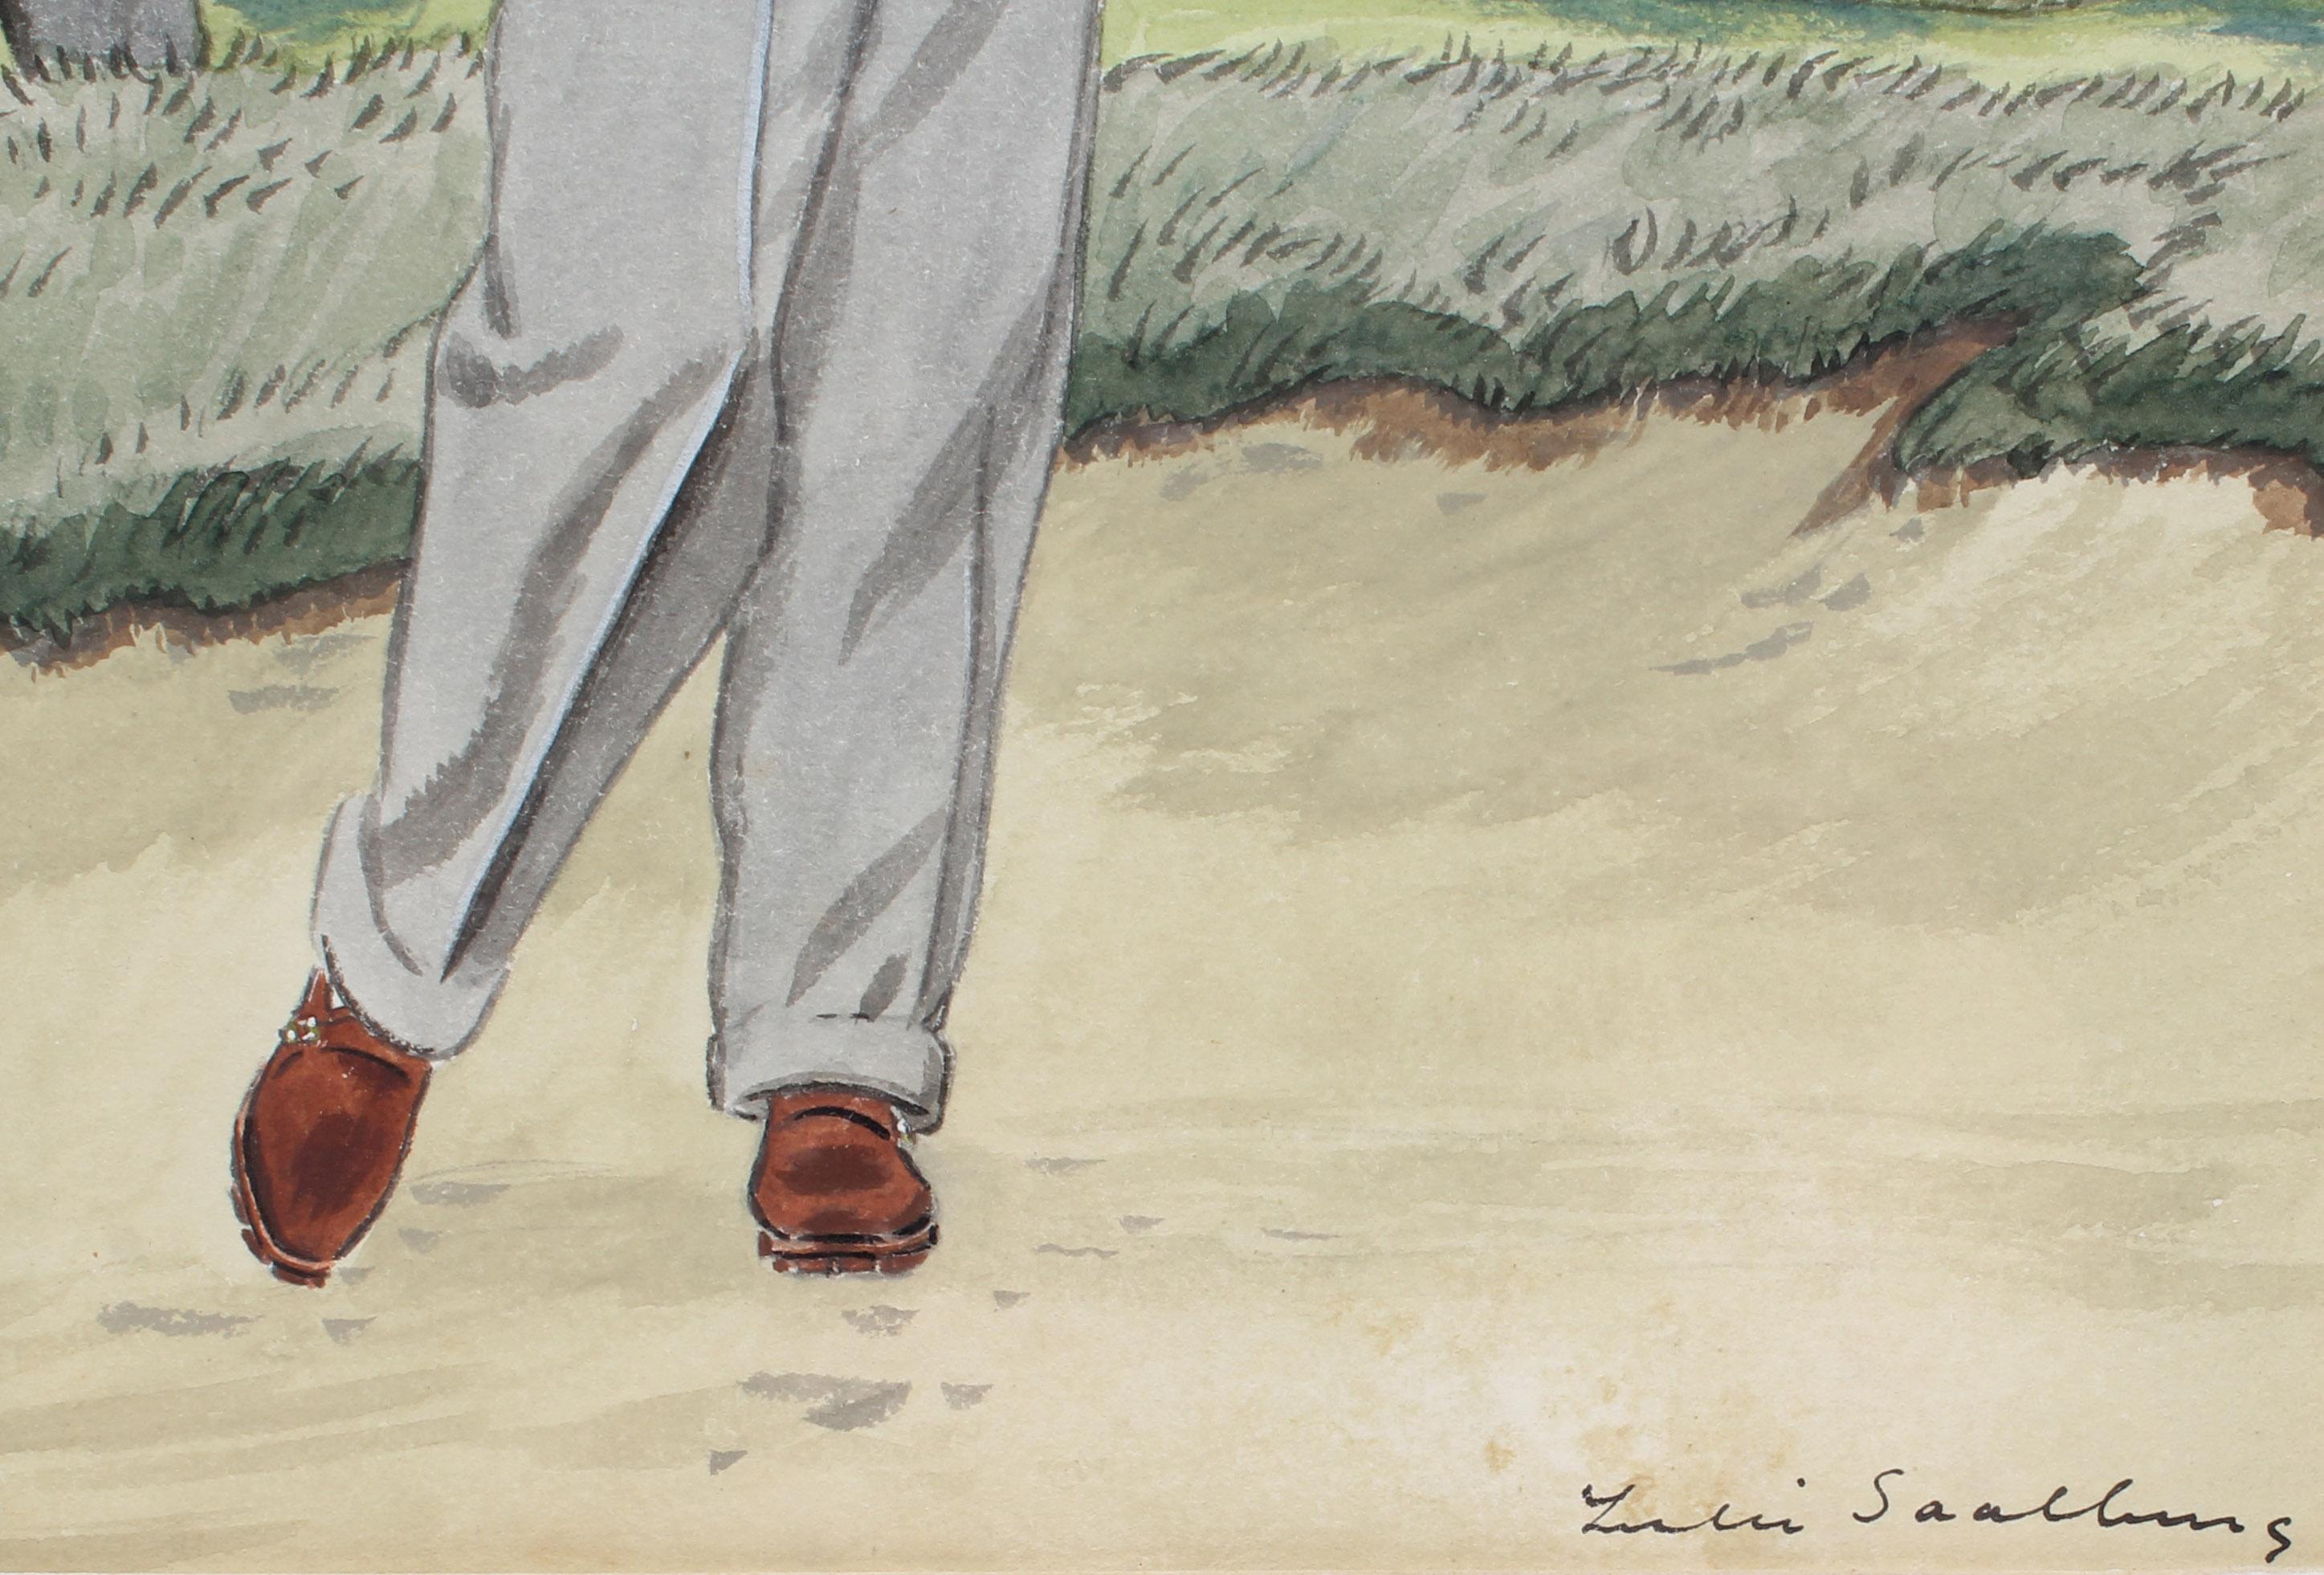 Antike Illustration eines Golfers von gelistetem Illustrator für Vanity Fair (Realismus), Painting, von Leslie Saalburg